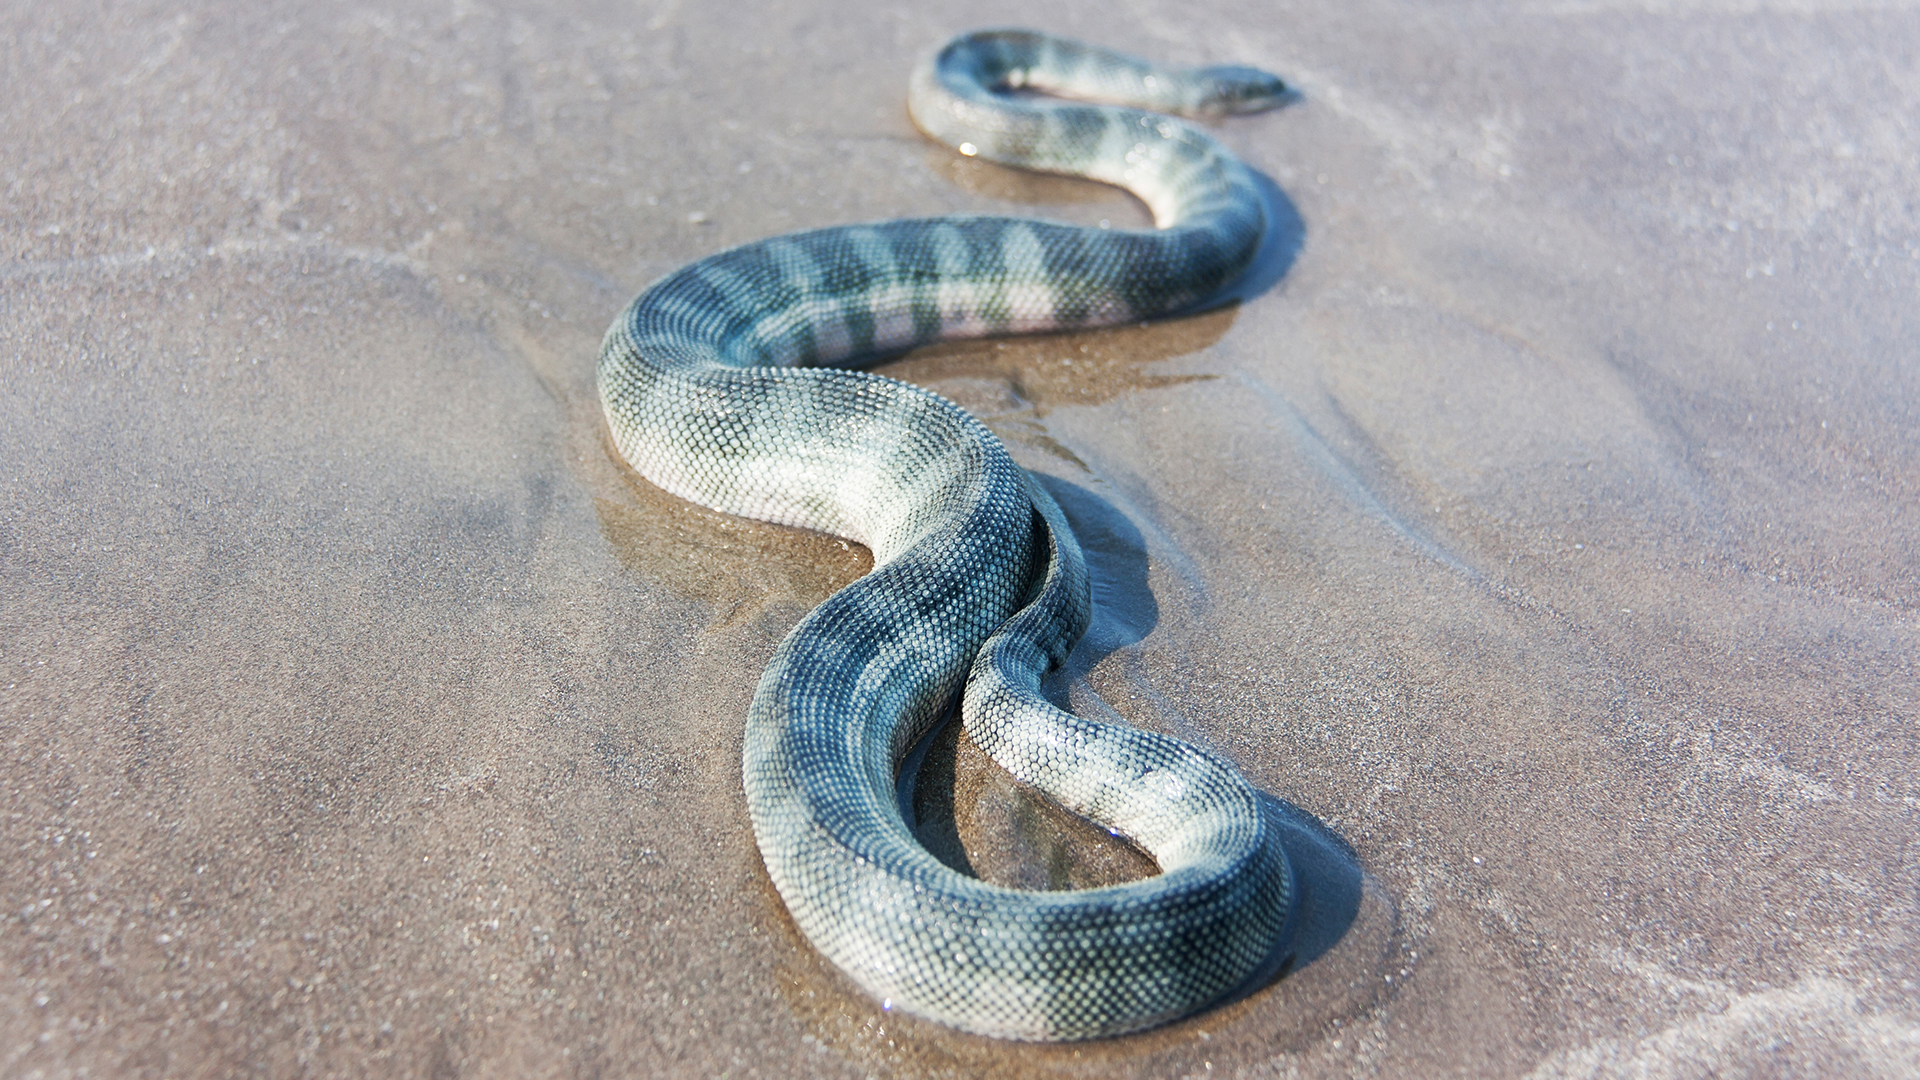 Beaked sea snake on the sand.